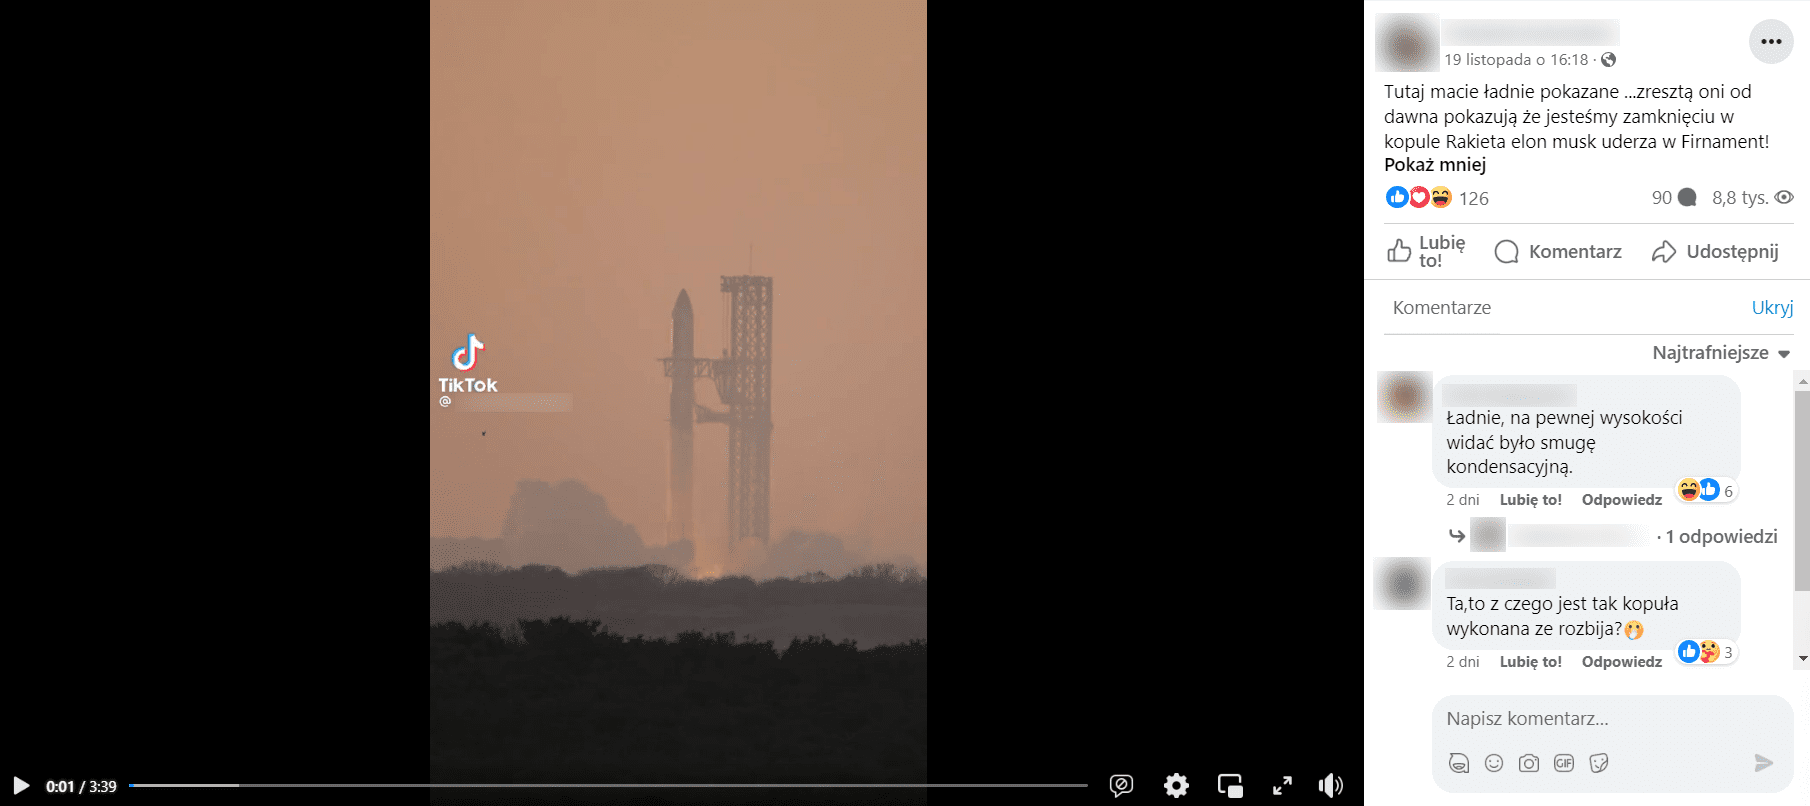 Zrzut ekranu z posta na Facebooku. Na nagraniu widzimy start rakiety, która po pewnym czasie wybucha. W opisie informacja, że pojazd zderzył się z kopułą przykrywającą Ziemię. 126 reakcji, 90 komentarzy i 8,8 tys. odtworzeń. 